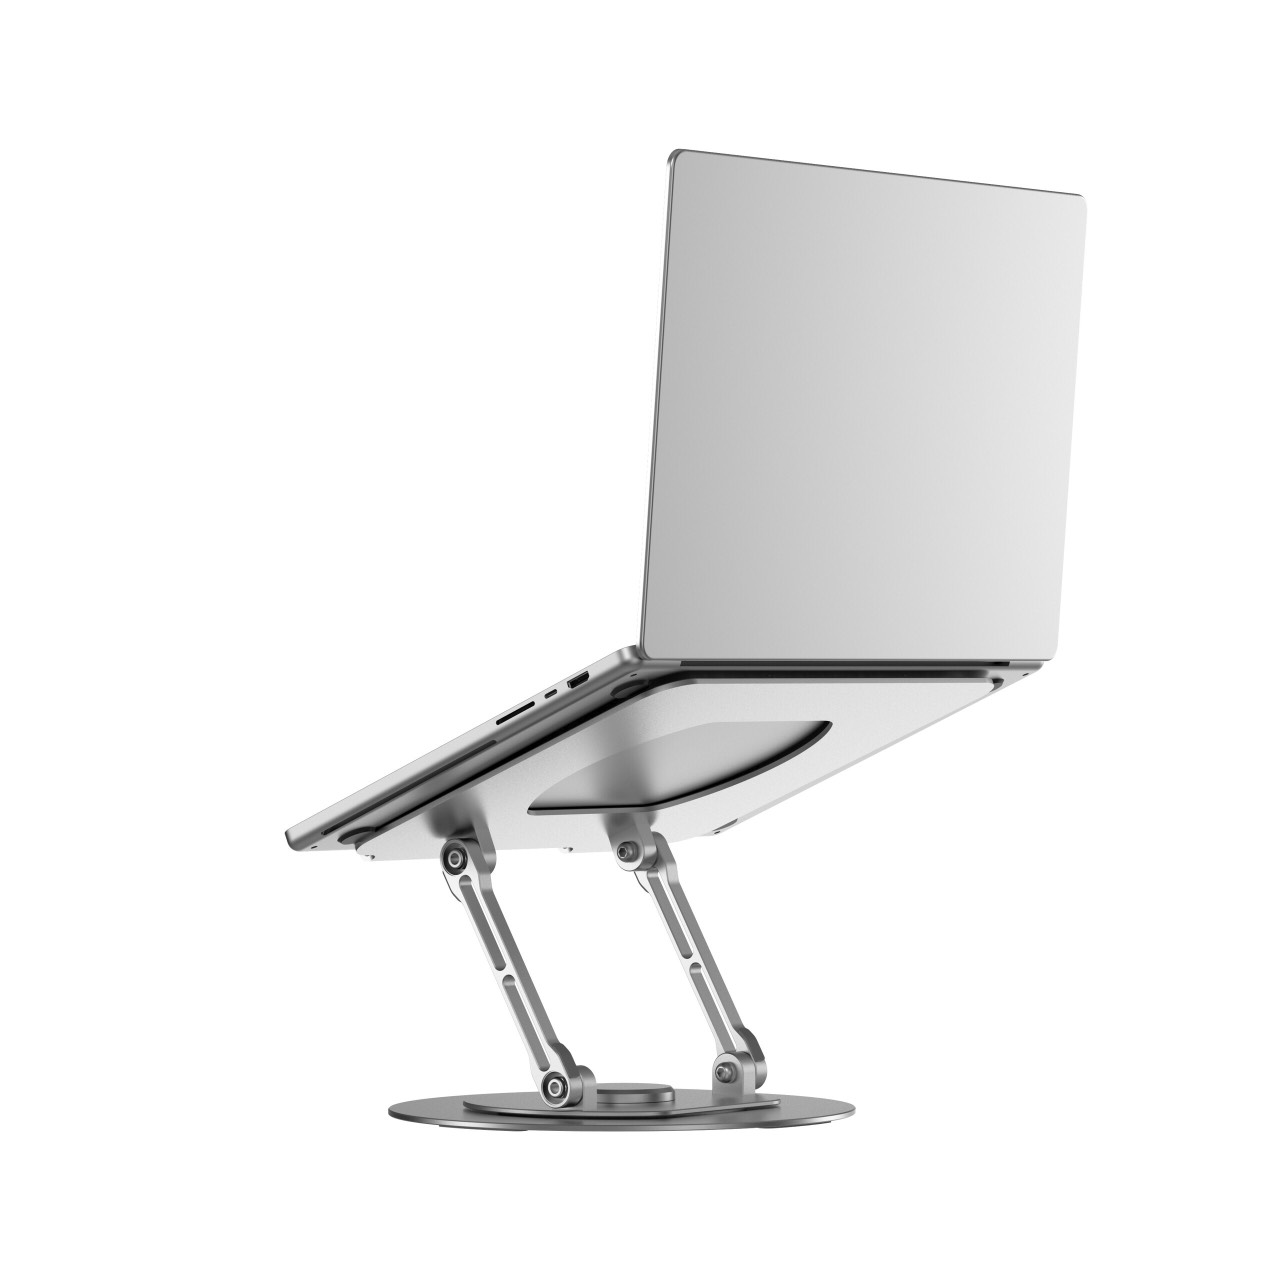 Giá đỡ Wiwu Laptop Stand S800 Pro cho máy tính xách tay từ 10 đến 17 inch, có thể điều chỉnh tùy ý, điều chỉnh góc lên đến 90 độ - Hàng chính hãng